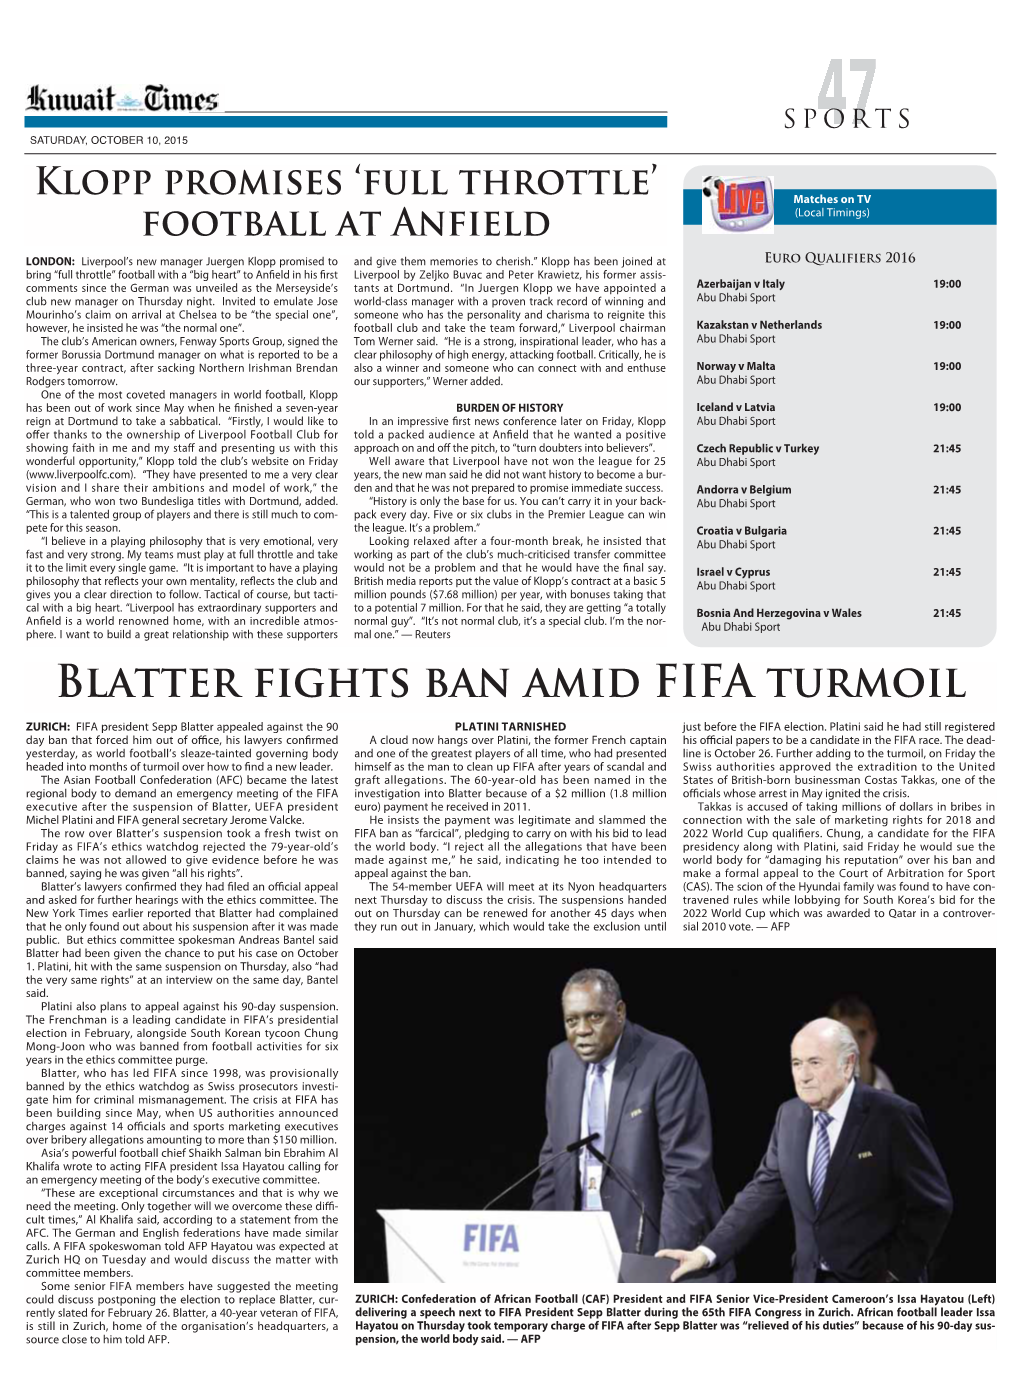 Blatter Fights Ban Amid FIFA Turmoil